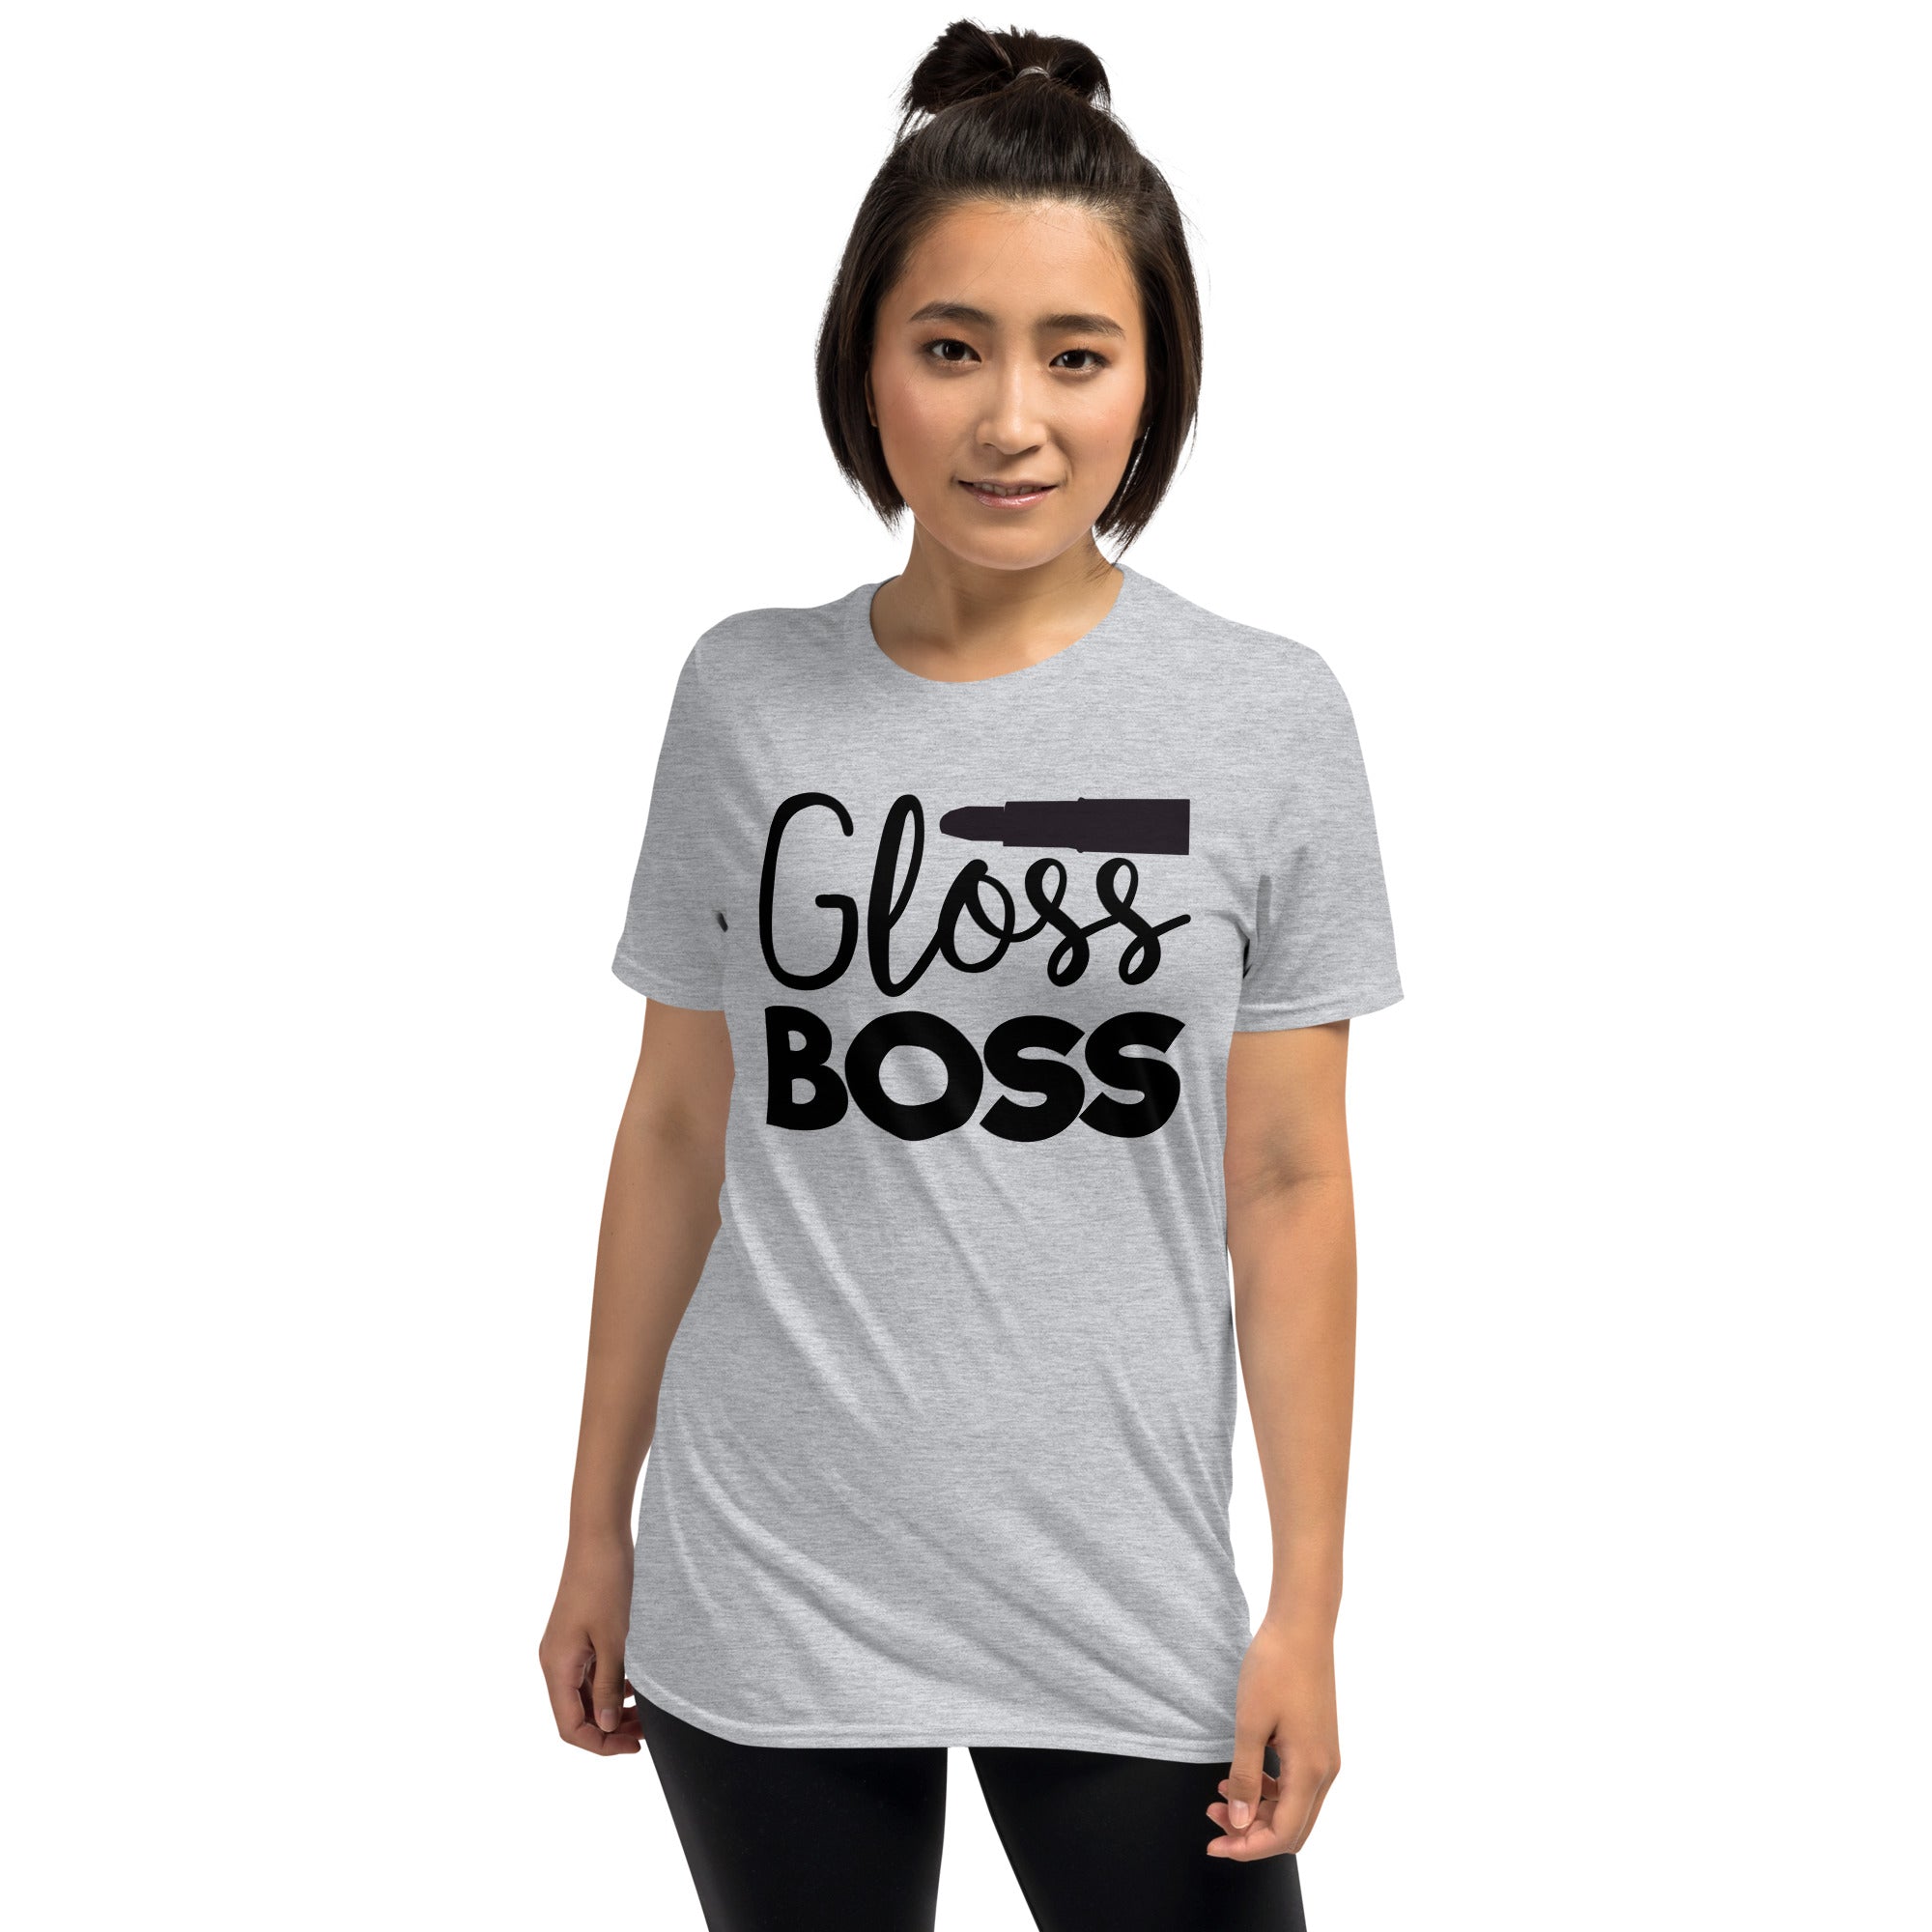 Gloss Boss - Short-Sleeve Unisex T-Shirt